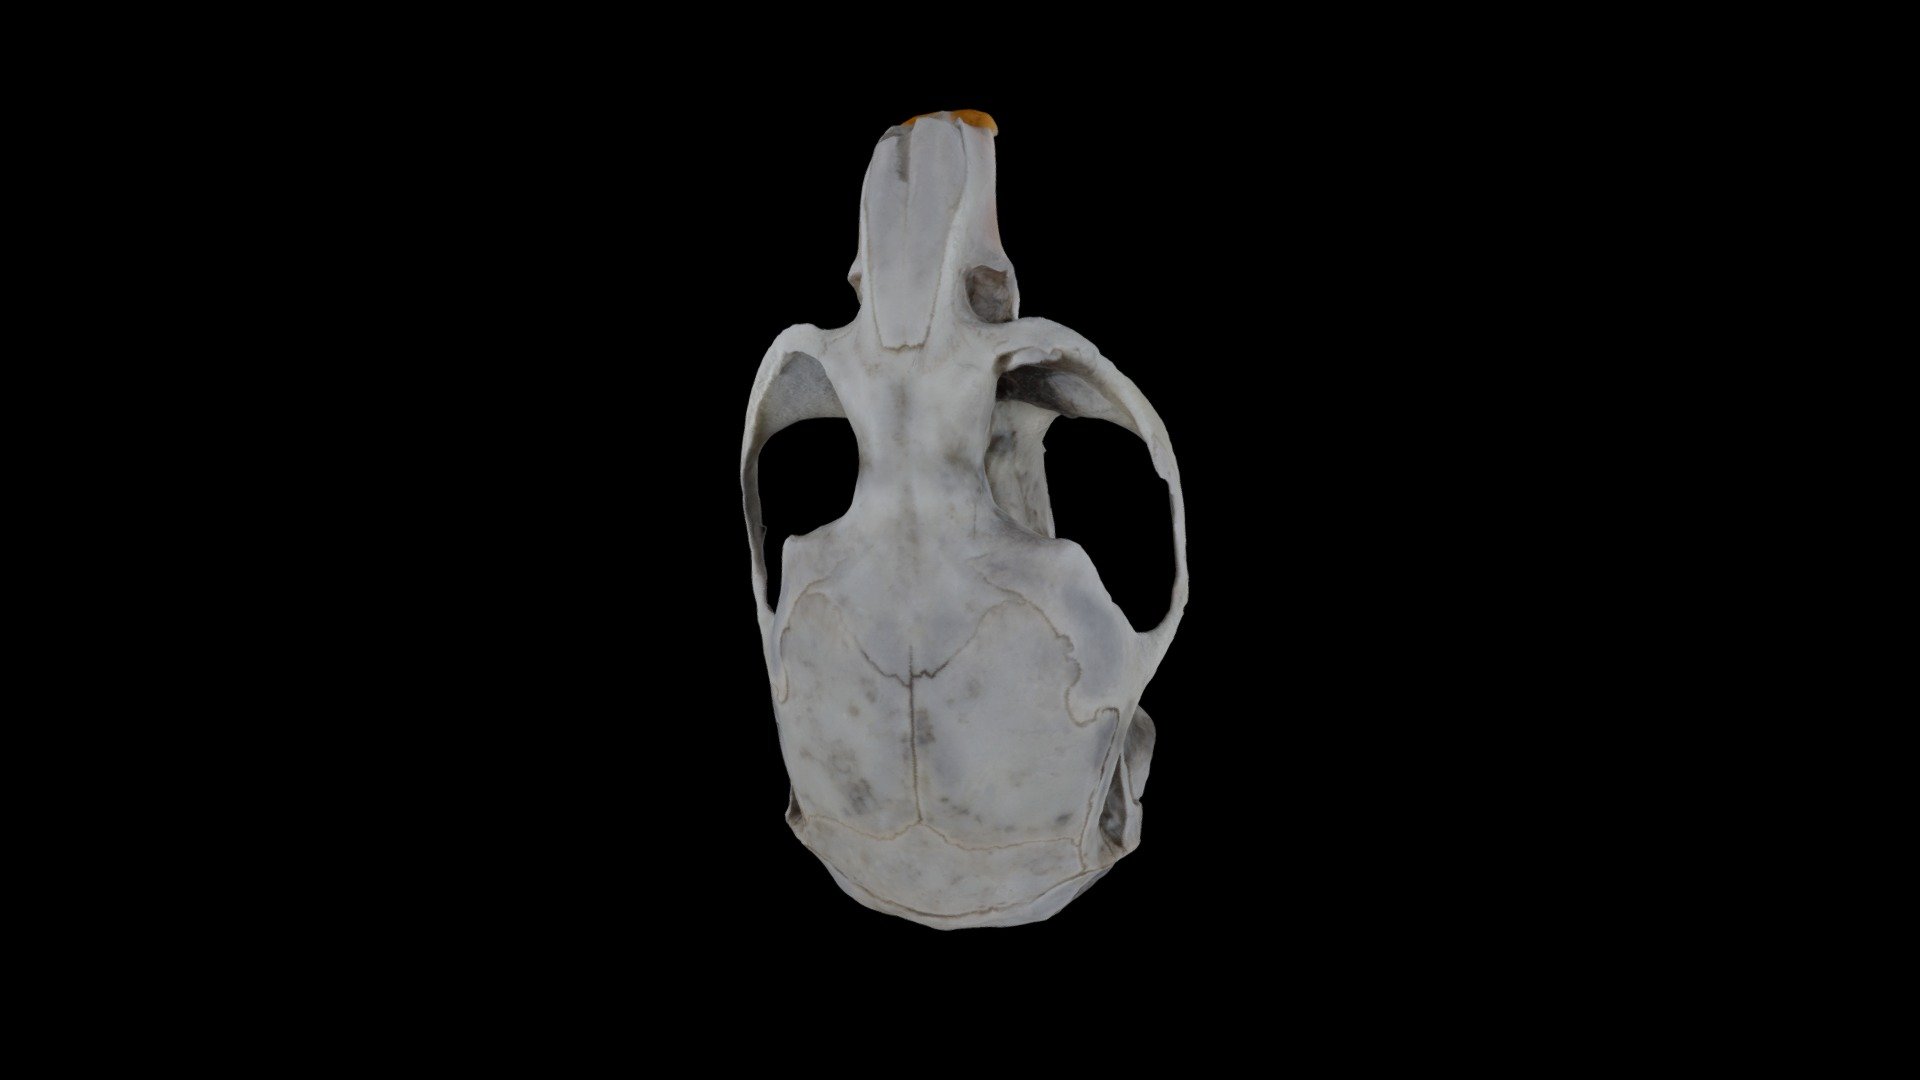 Vole Skull from Barn Owl Pellet